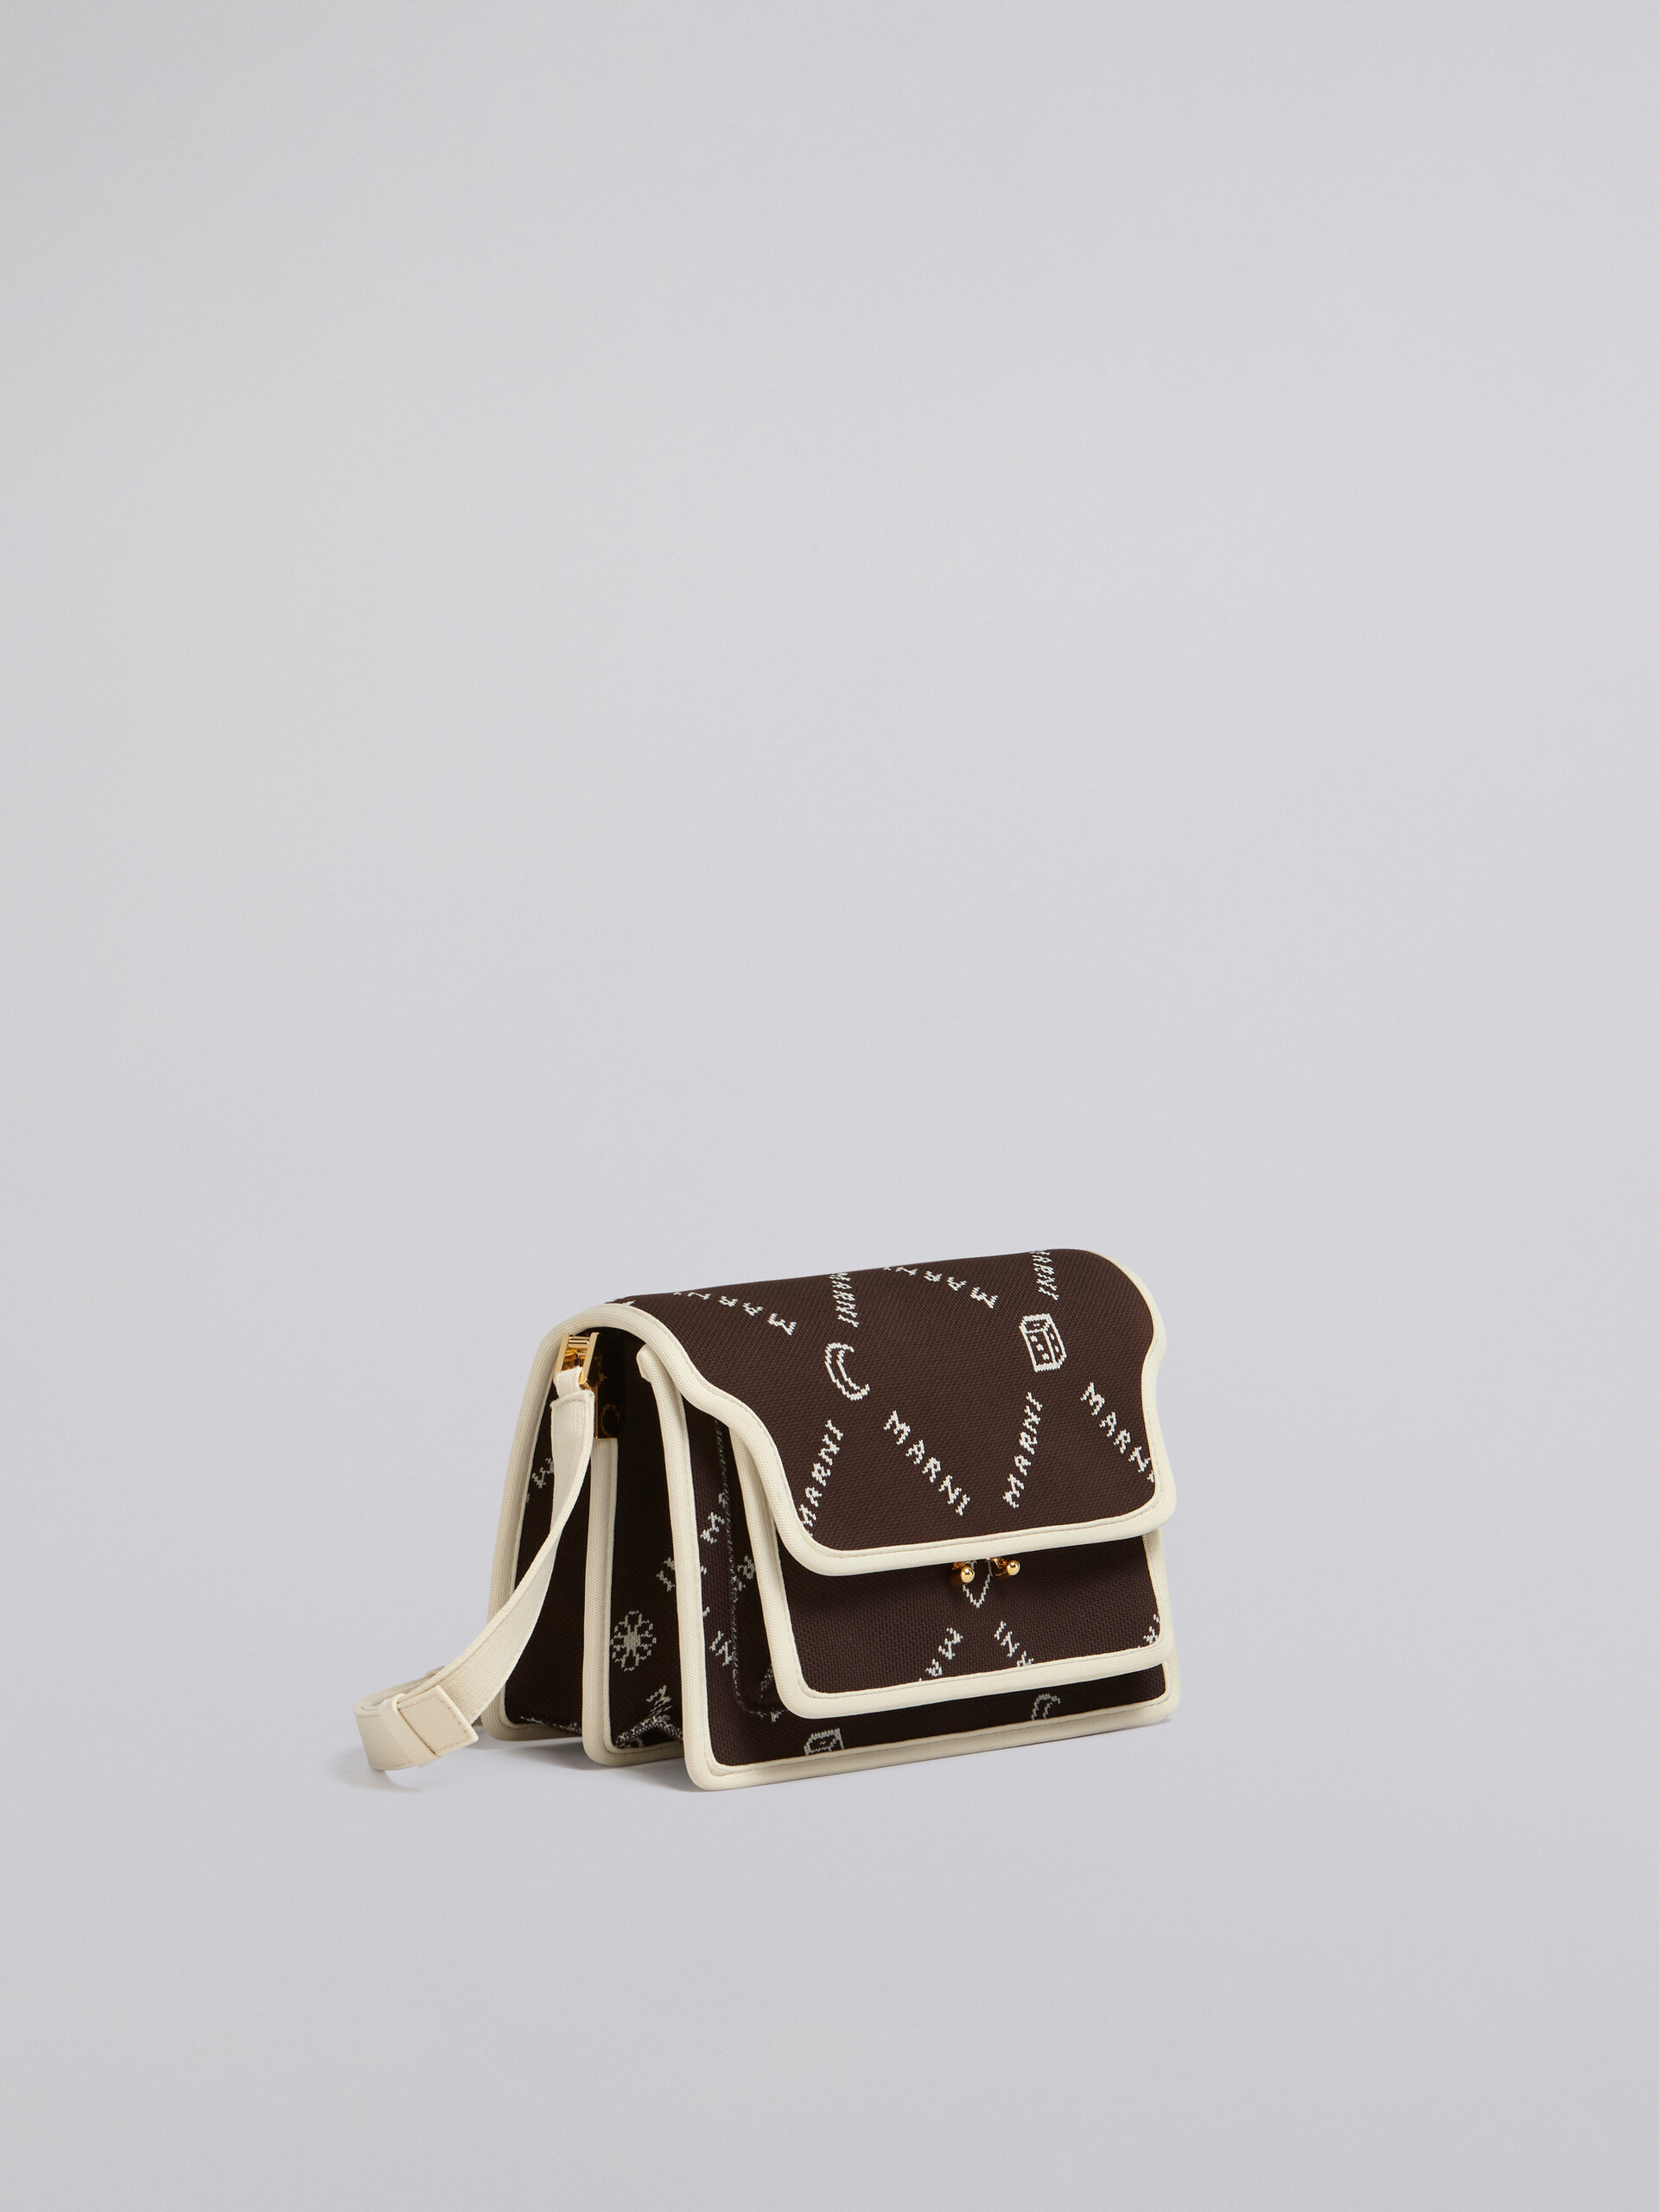 TRUNK SOFT medium bag in brown Marnigram jacquard - Shoulder Bags - Image 6